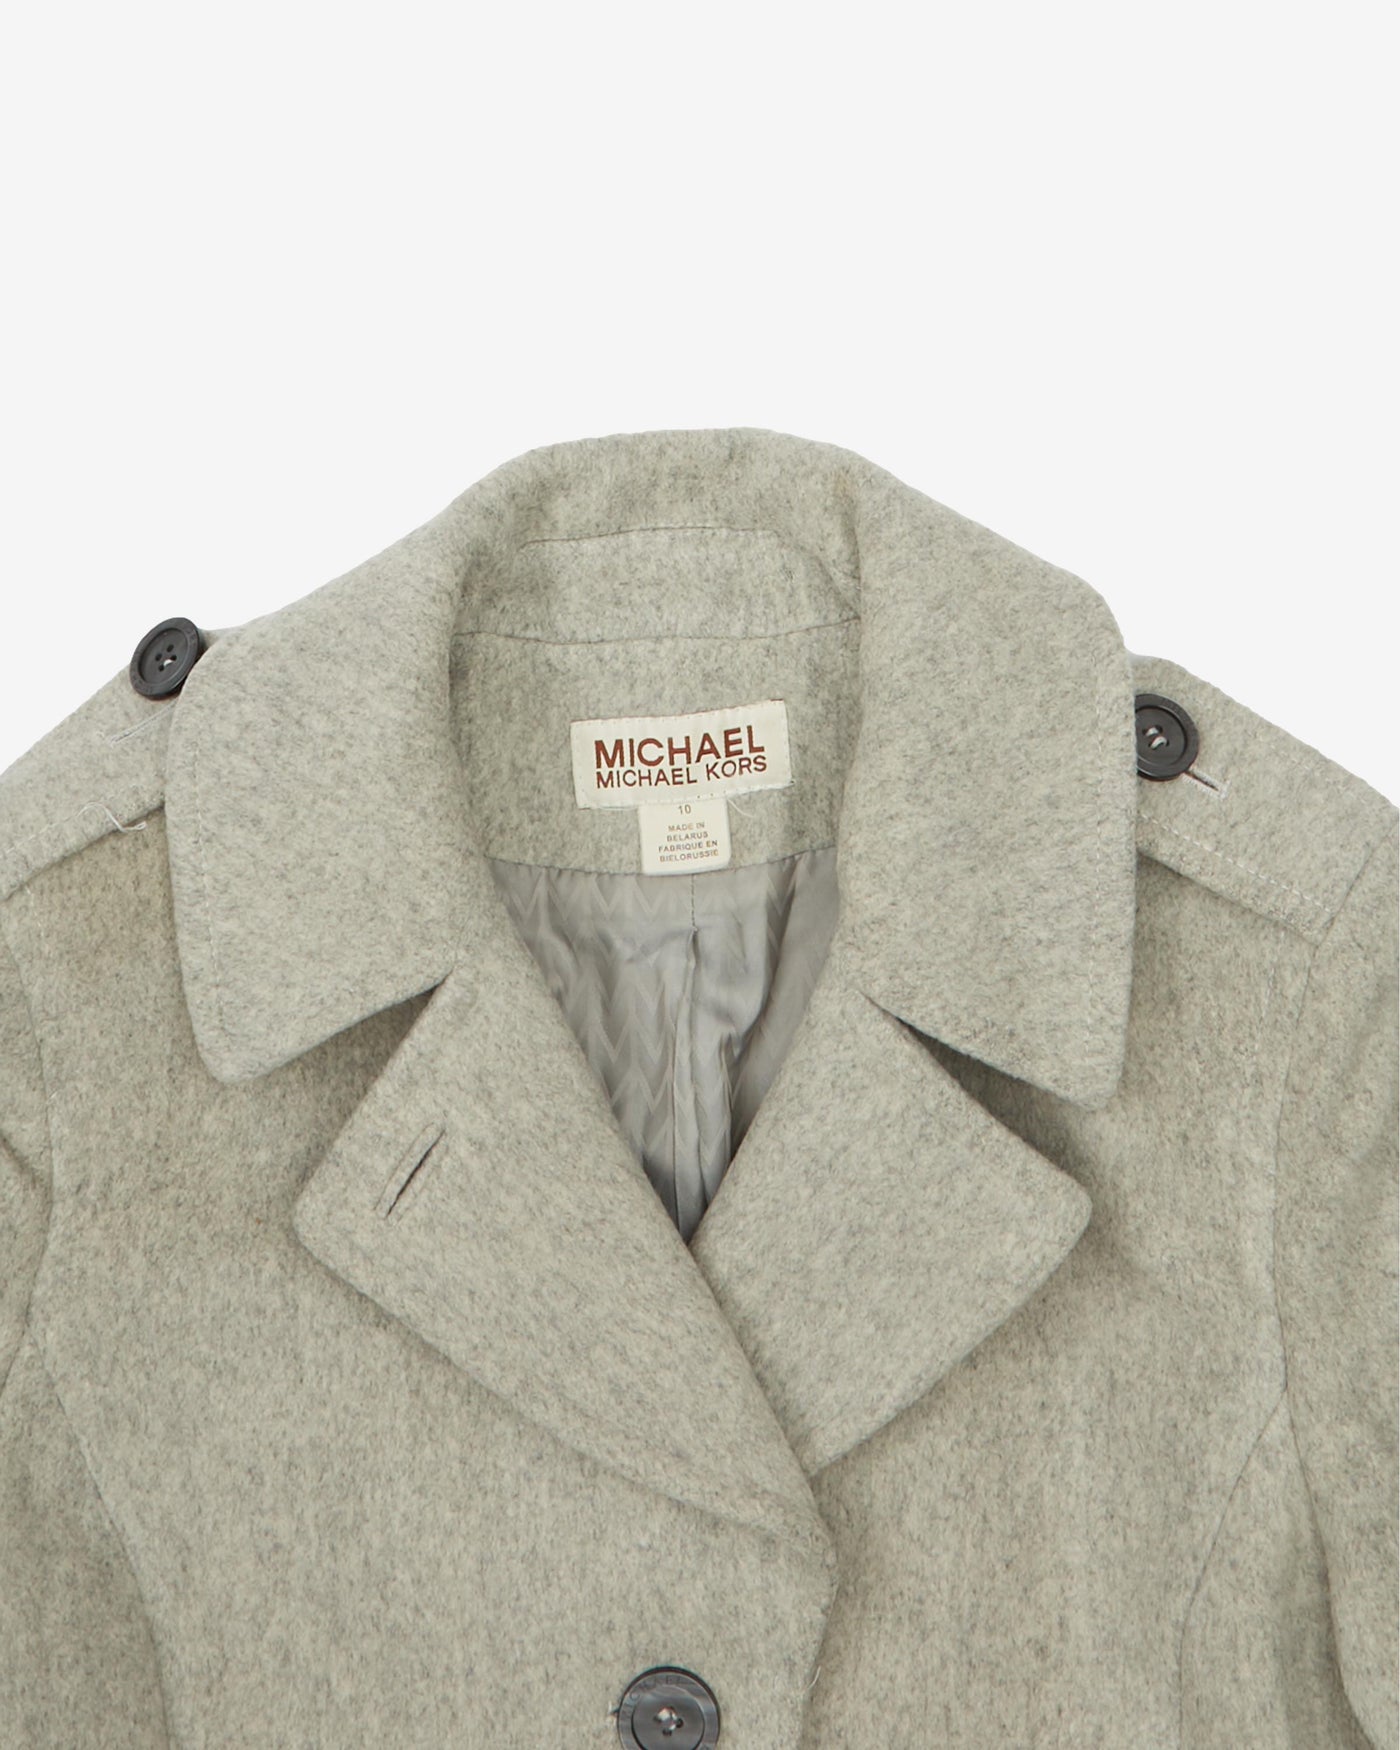 Michael Kors Grey Wool Overcoat - XS / S